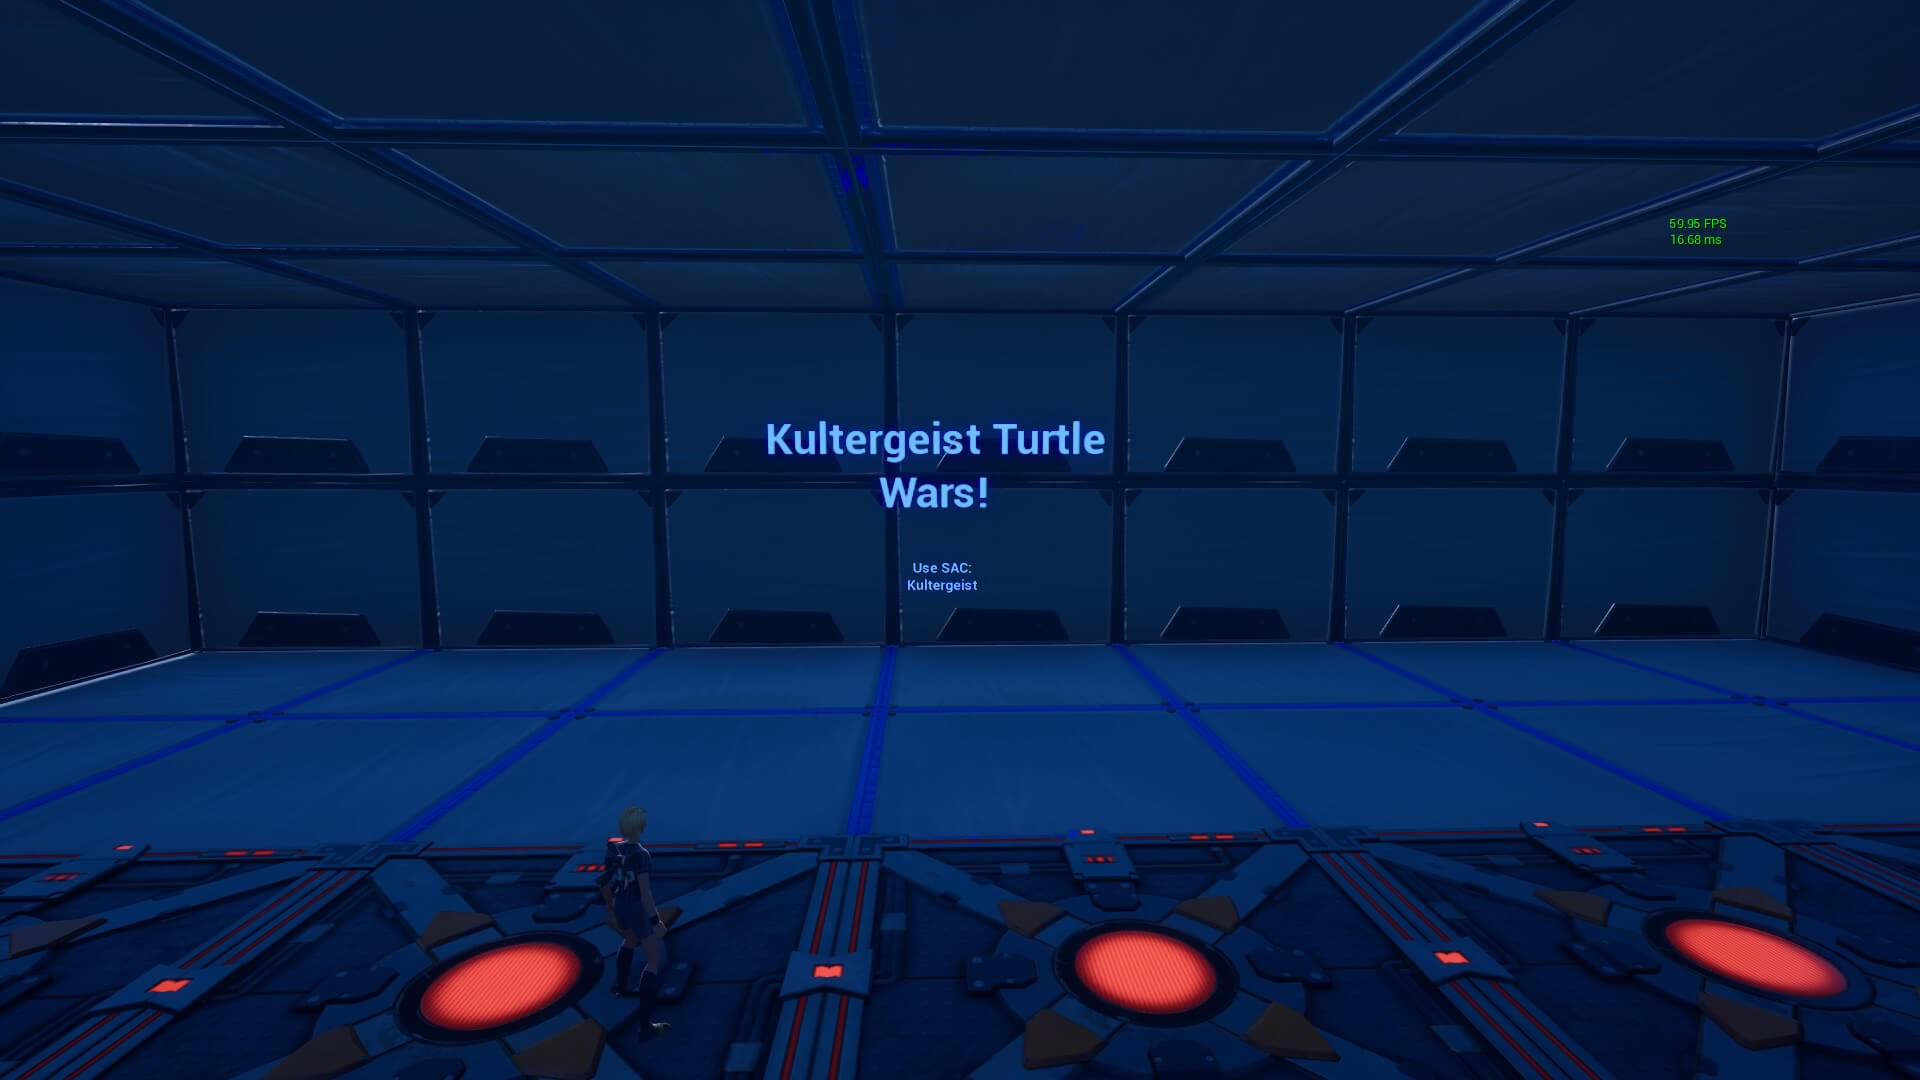 KULTERGEIST'S TURTLE WARS